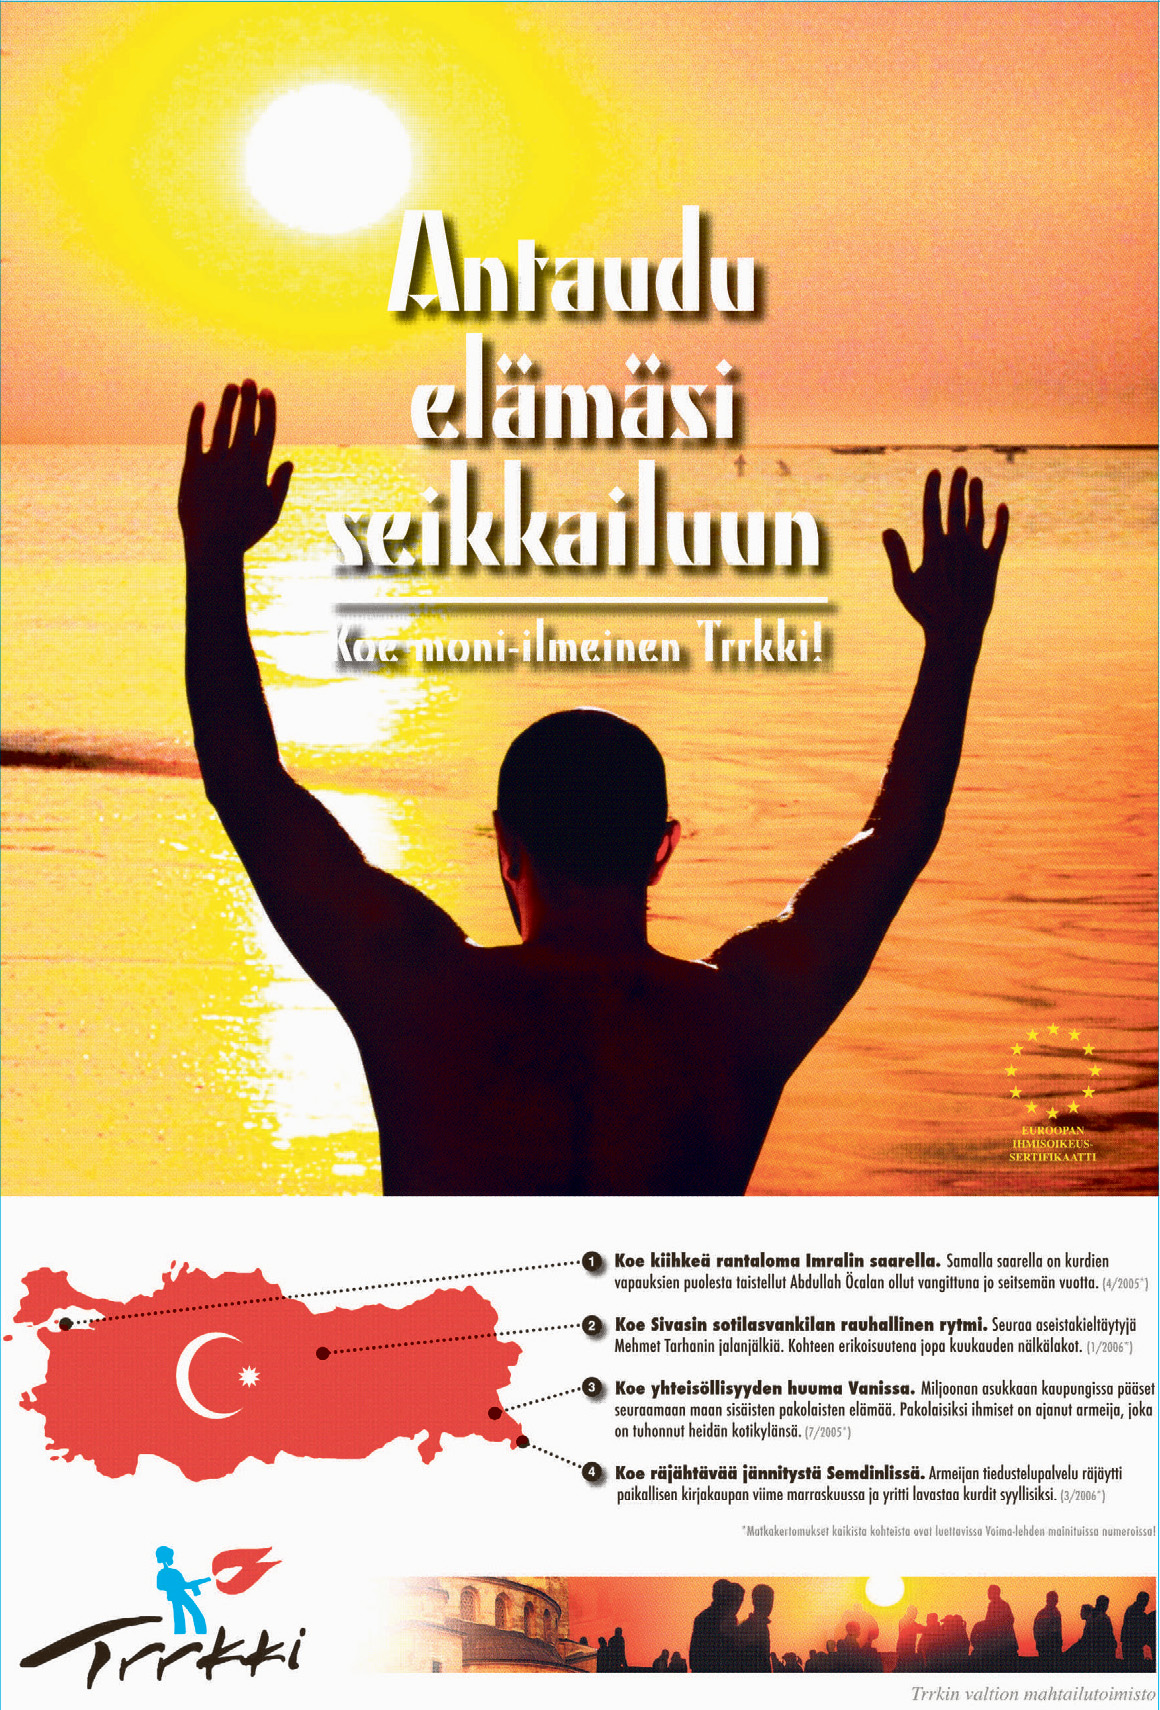 Voiman vastamainos kommentoi Turkin matkailua vuonna 2006. Totuttujen rantakohteiden sijaan nostimme matkakohteiksi erilaisia kriisipesäkkeitä. 